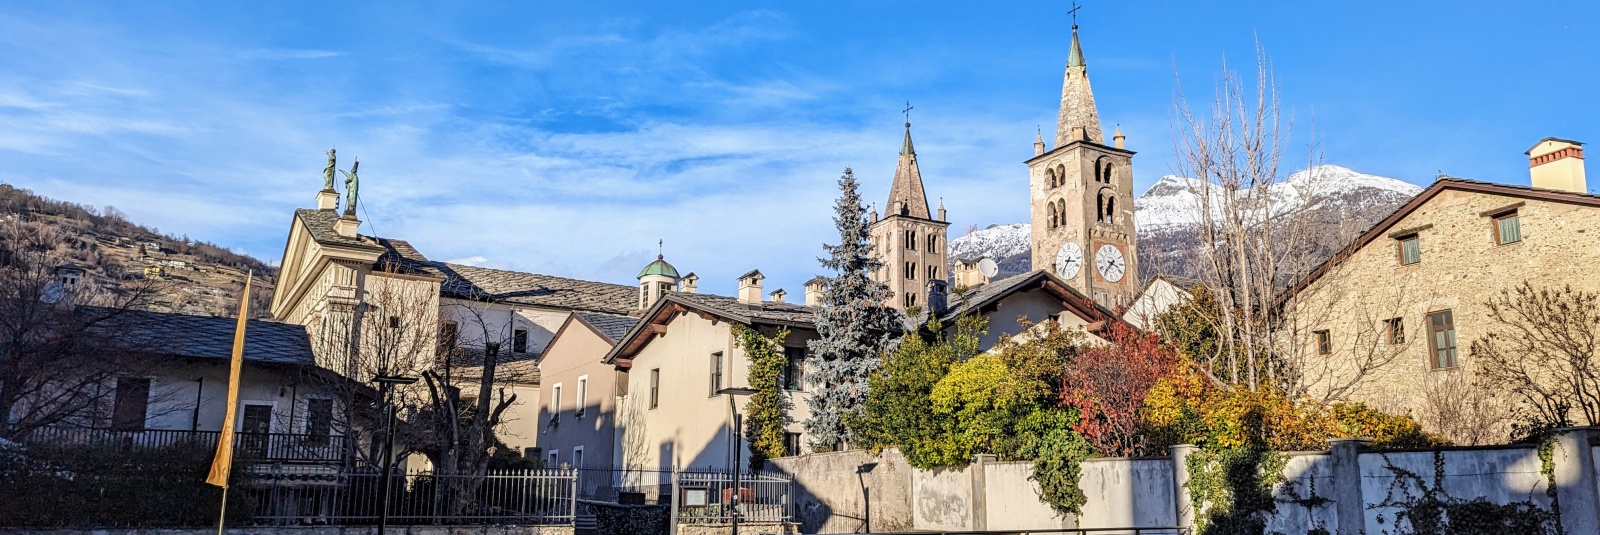 Ce poți vizita în orașul Aosta?